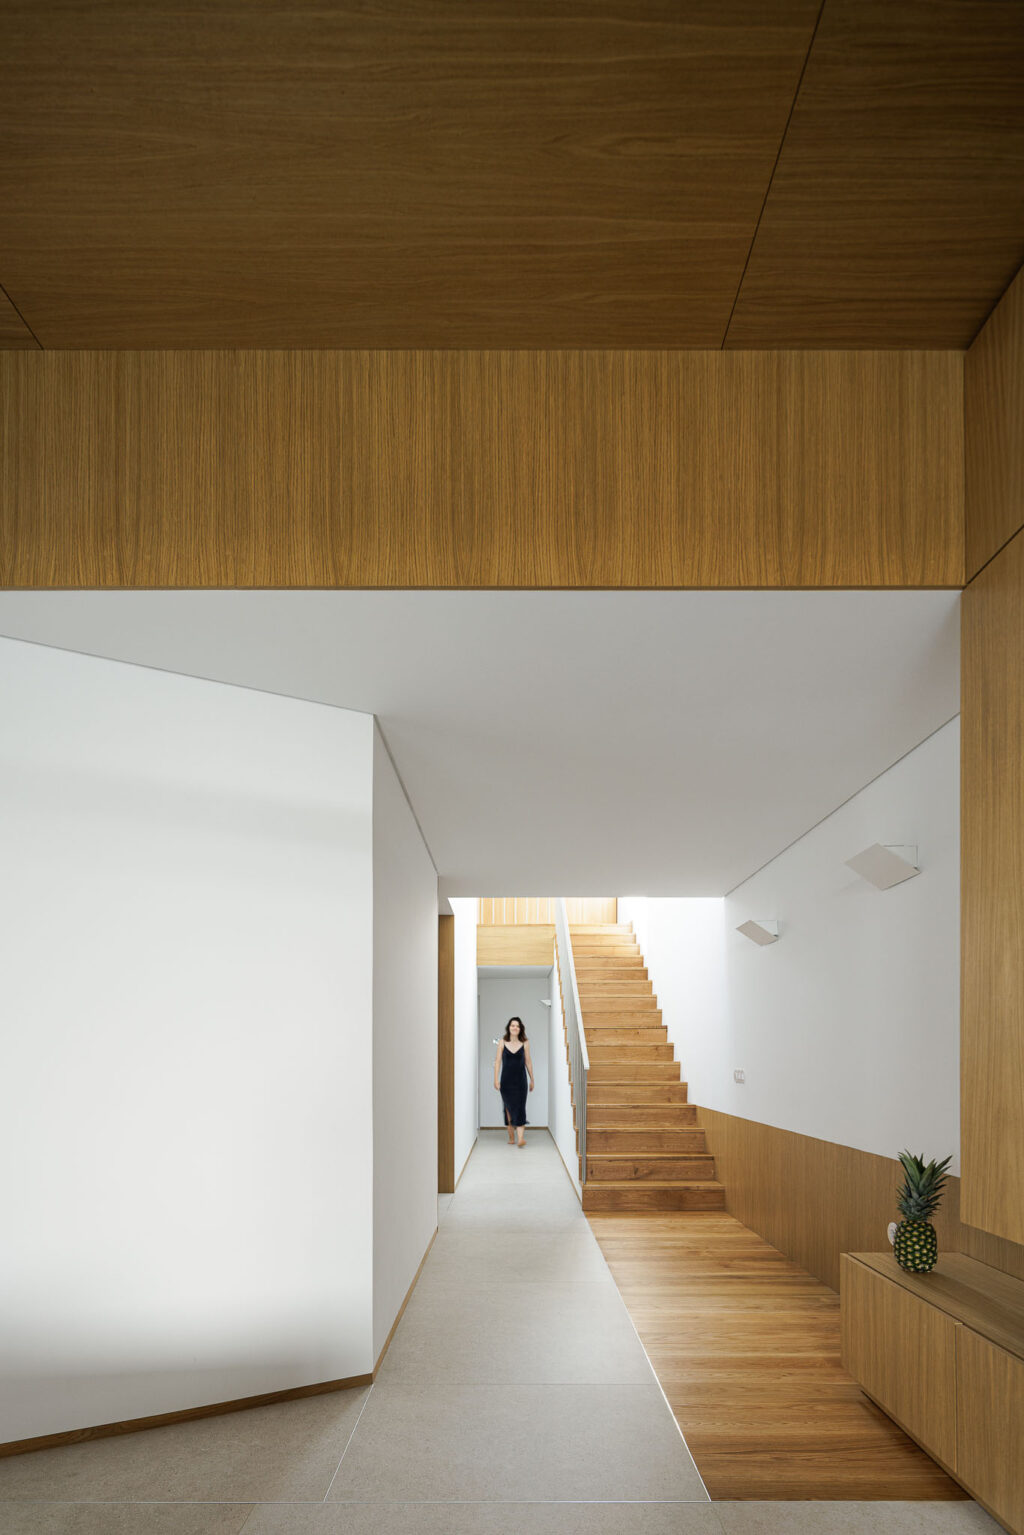 Μια αρχιτεκτονική που αμφισβητεί τις συμβάσεις και δημιουργεί συναισθηματικούς χώρους. Forte House από το Pema Studio